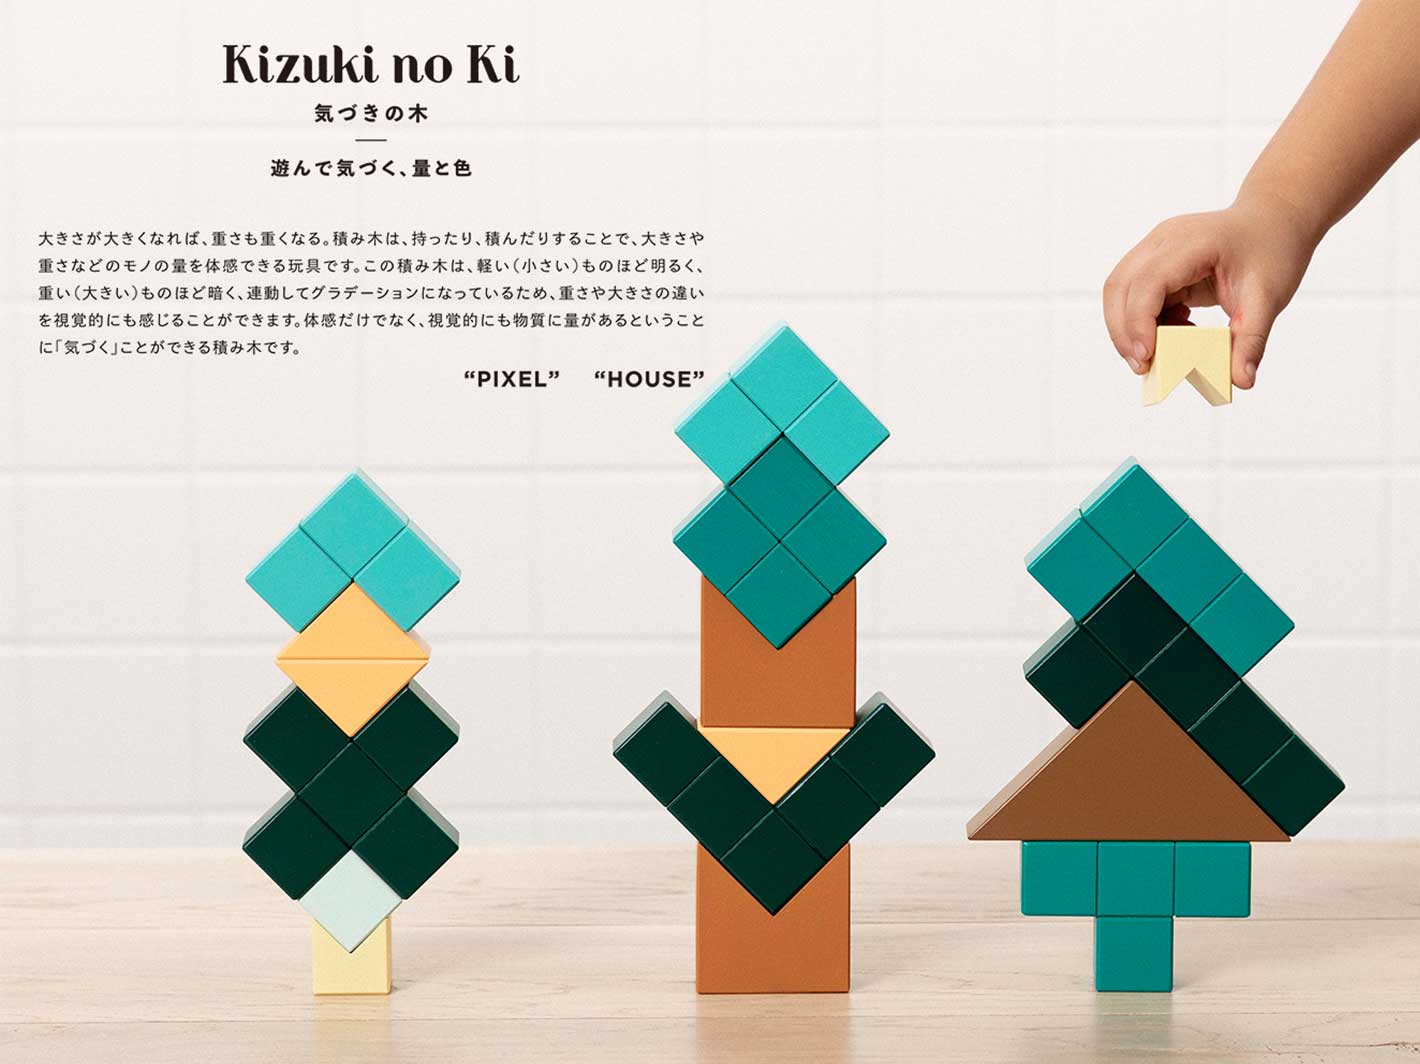 Kizuki no Ki Blocks - House